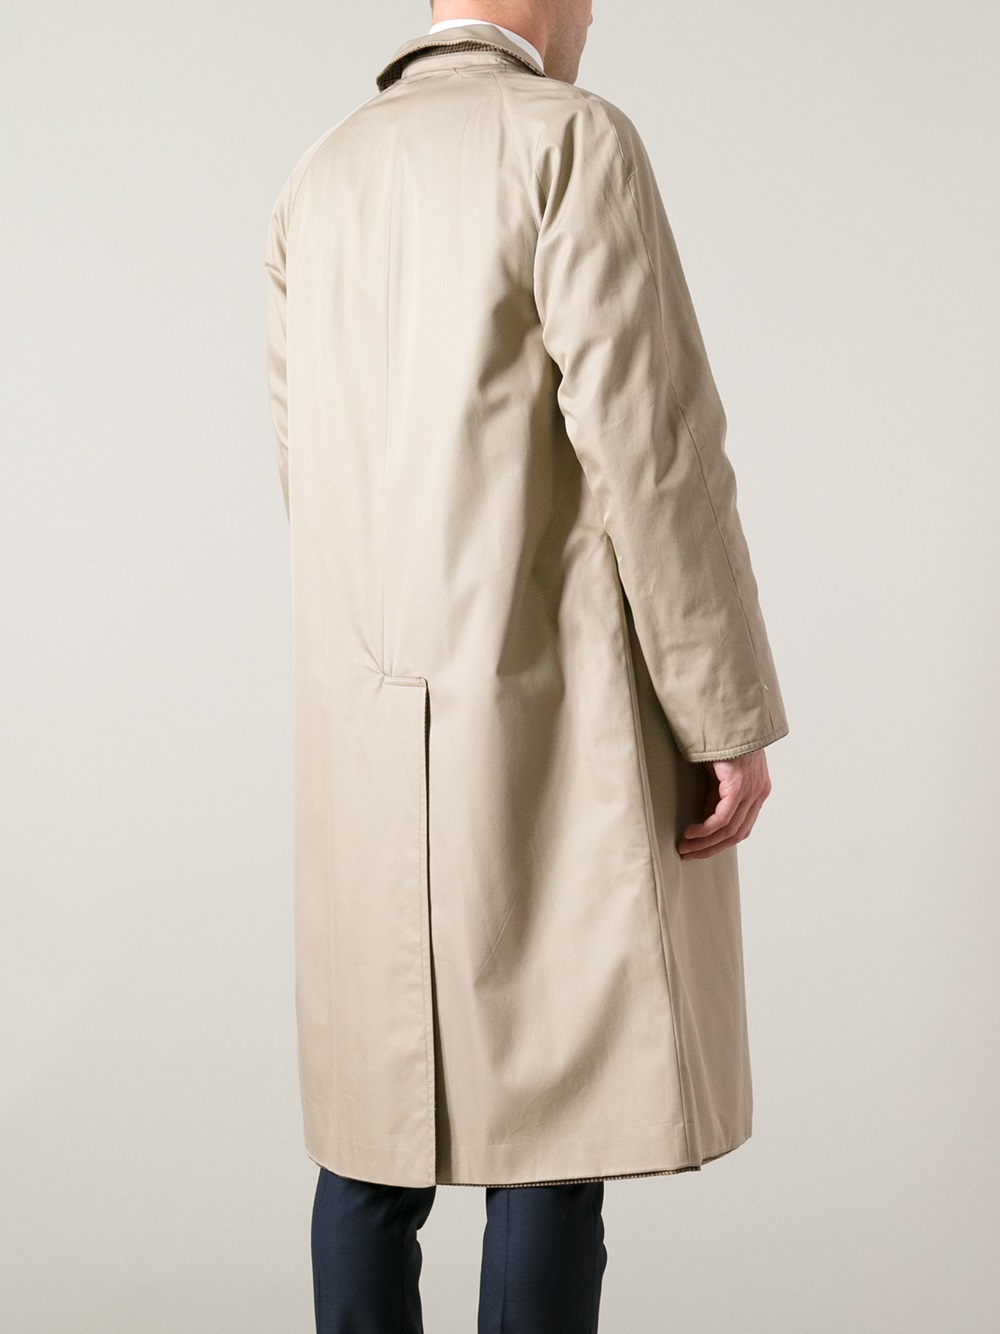 VegavintageFinds Vintage Reversible Trench Coat/ Raincoat